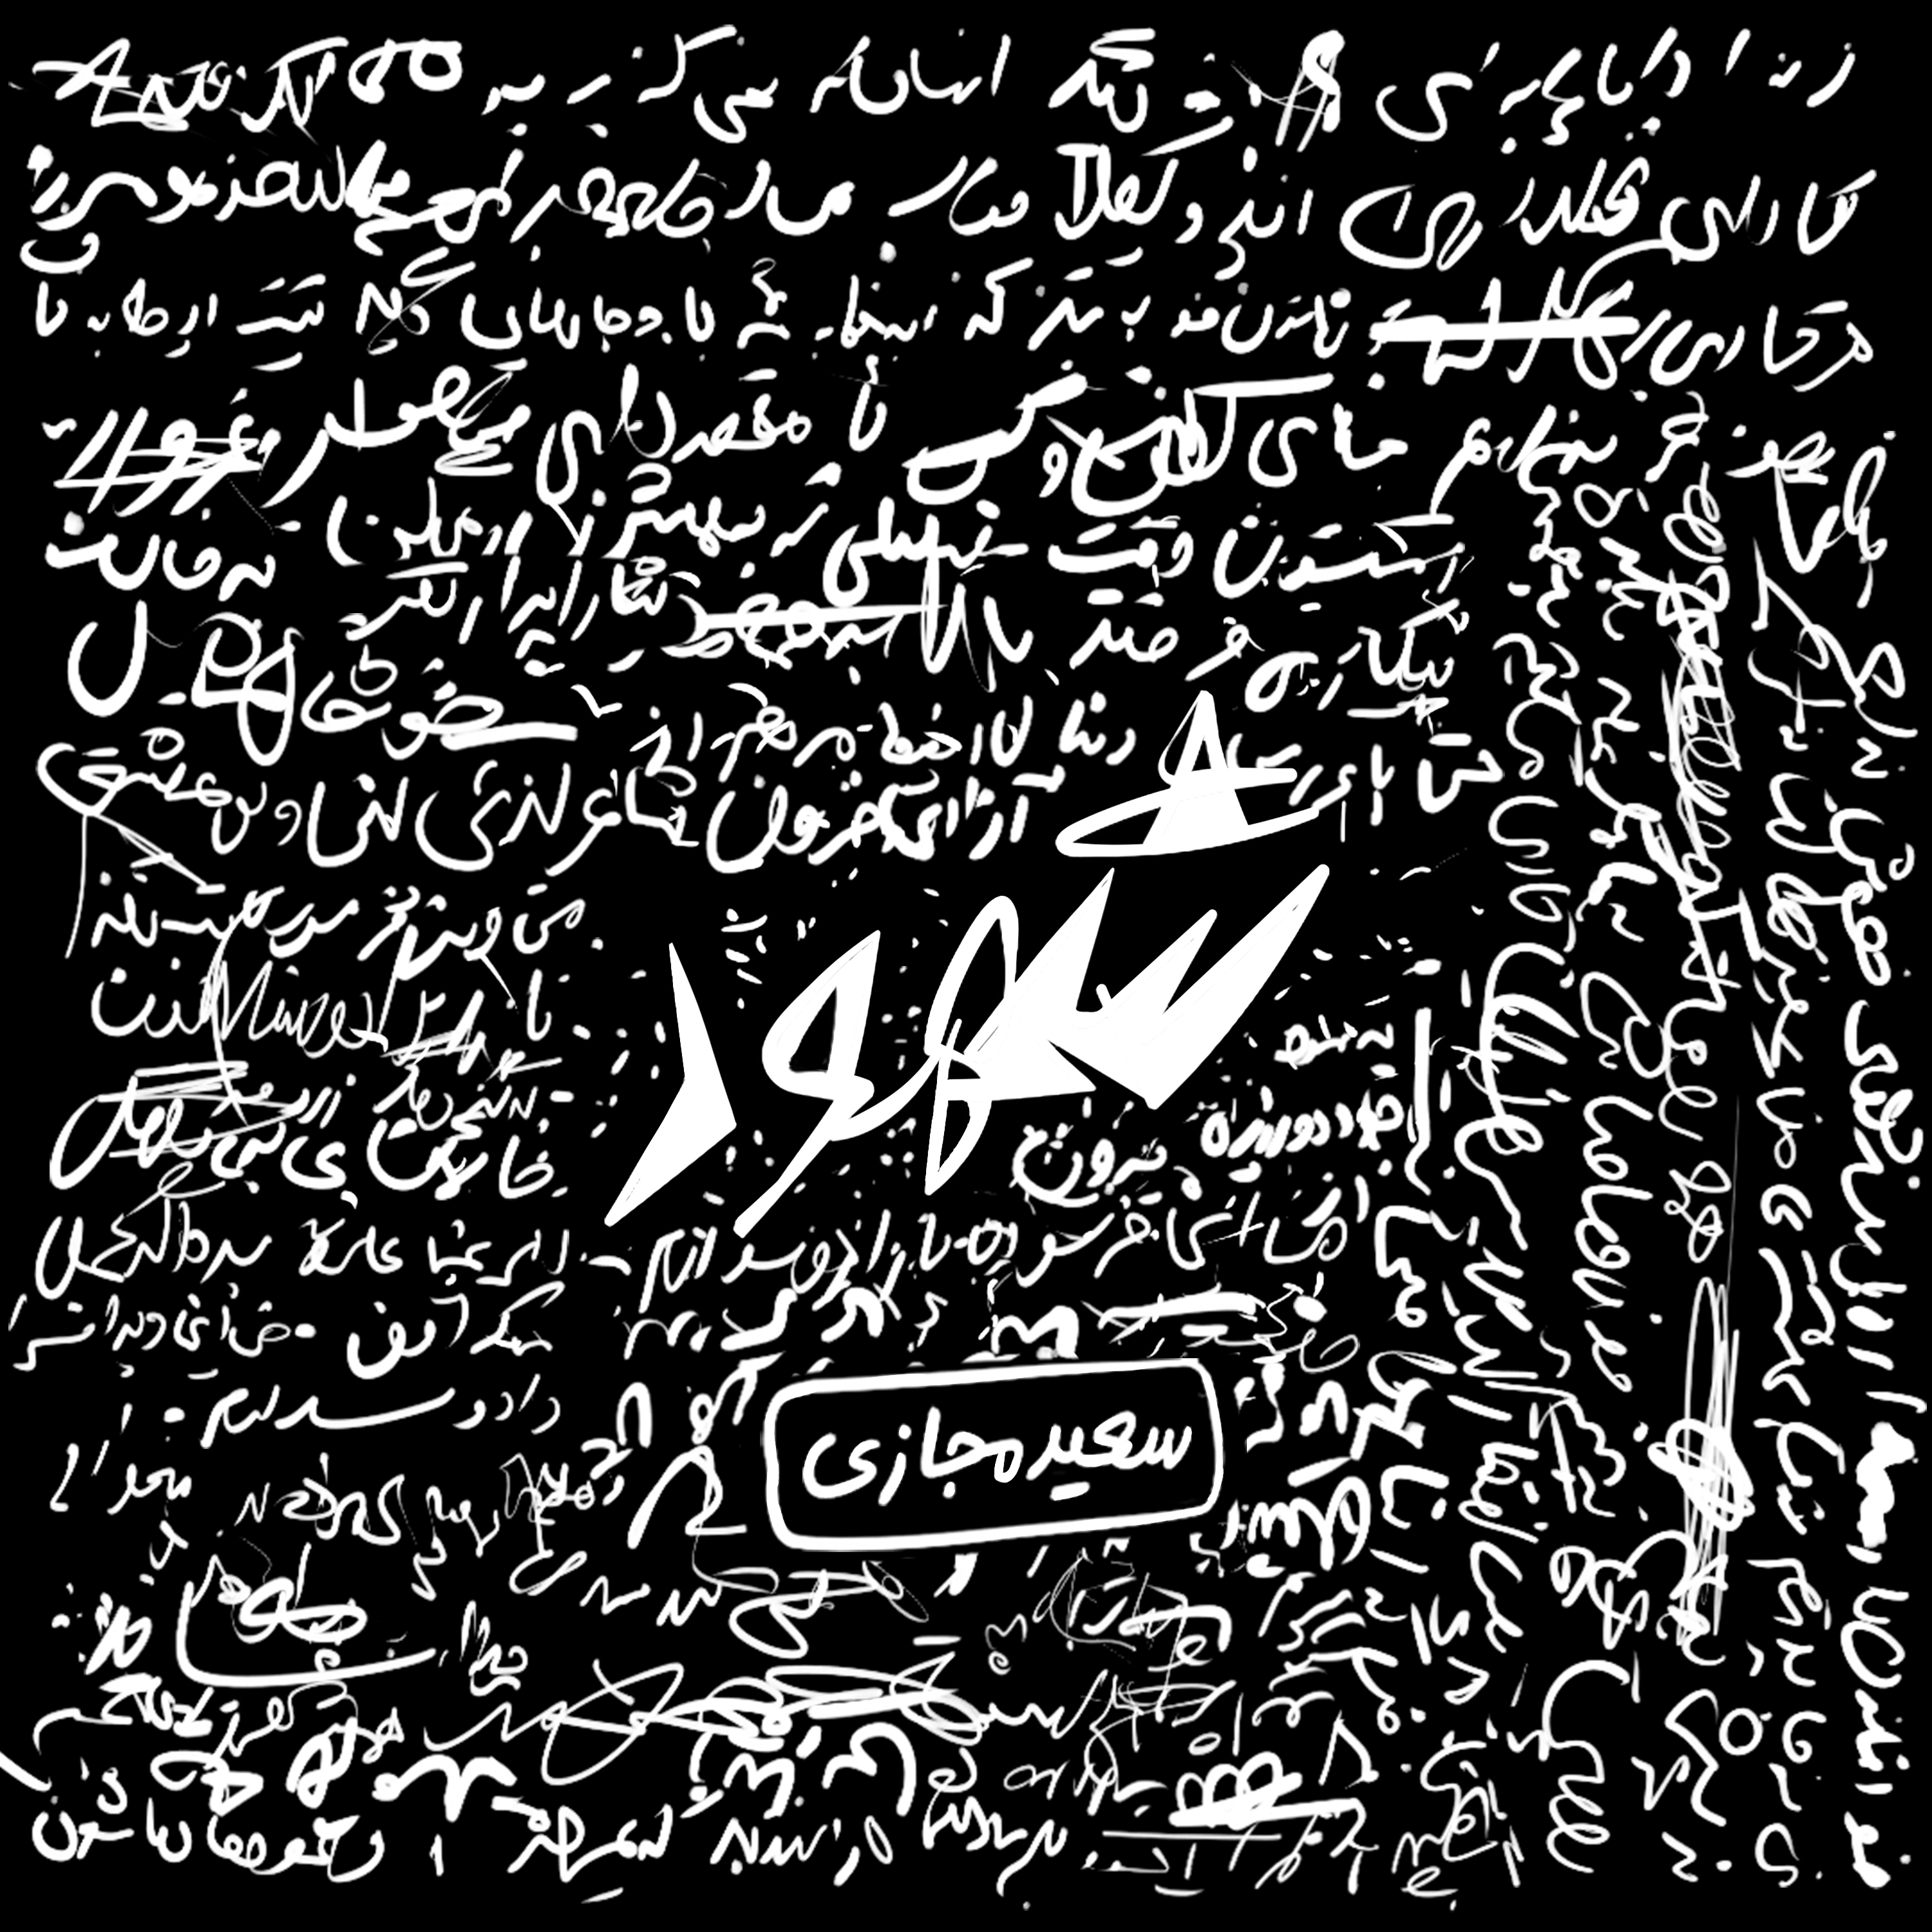  دانلود آهنگ جدید سعید مجازی - جیره خور | Download New Music By SaeeD Majazi - Jire Khor